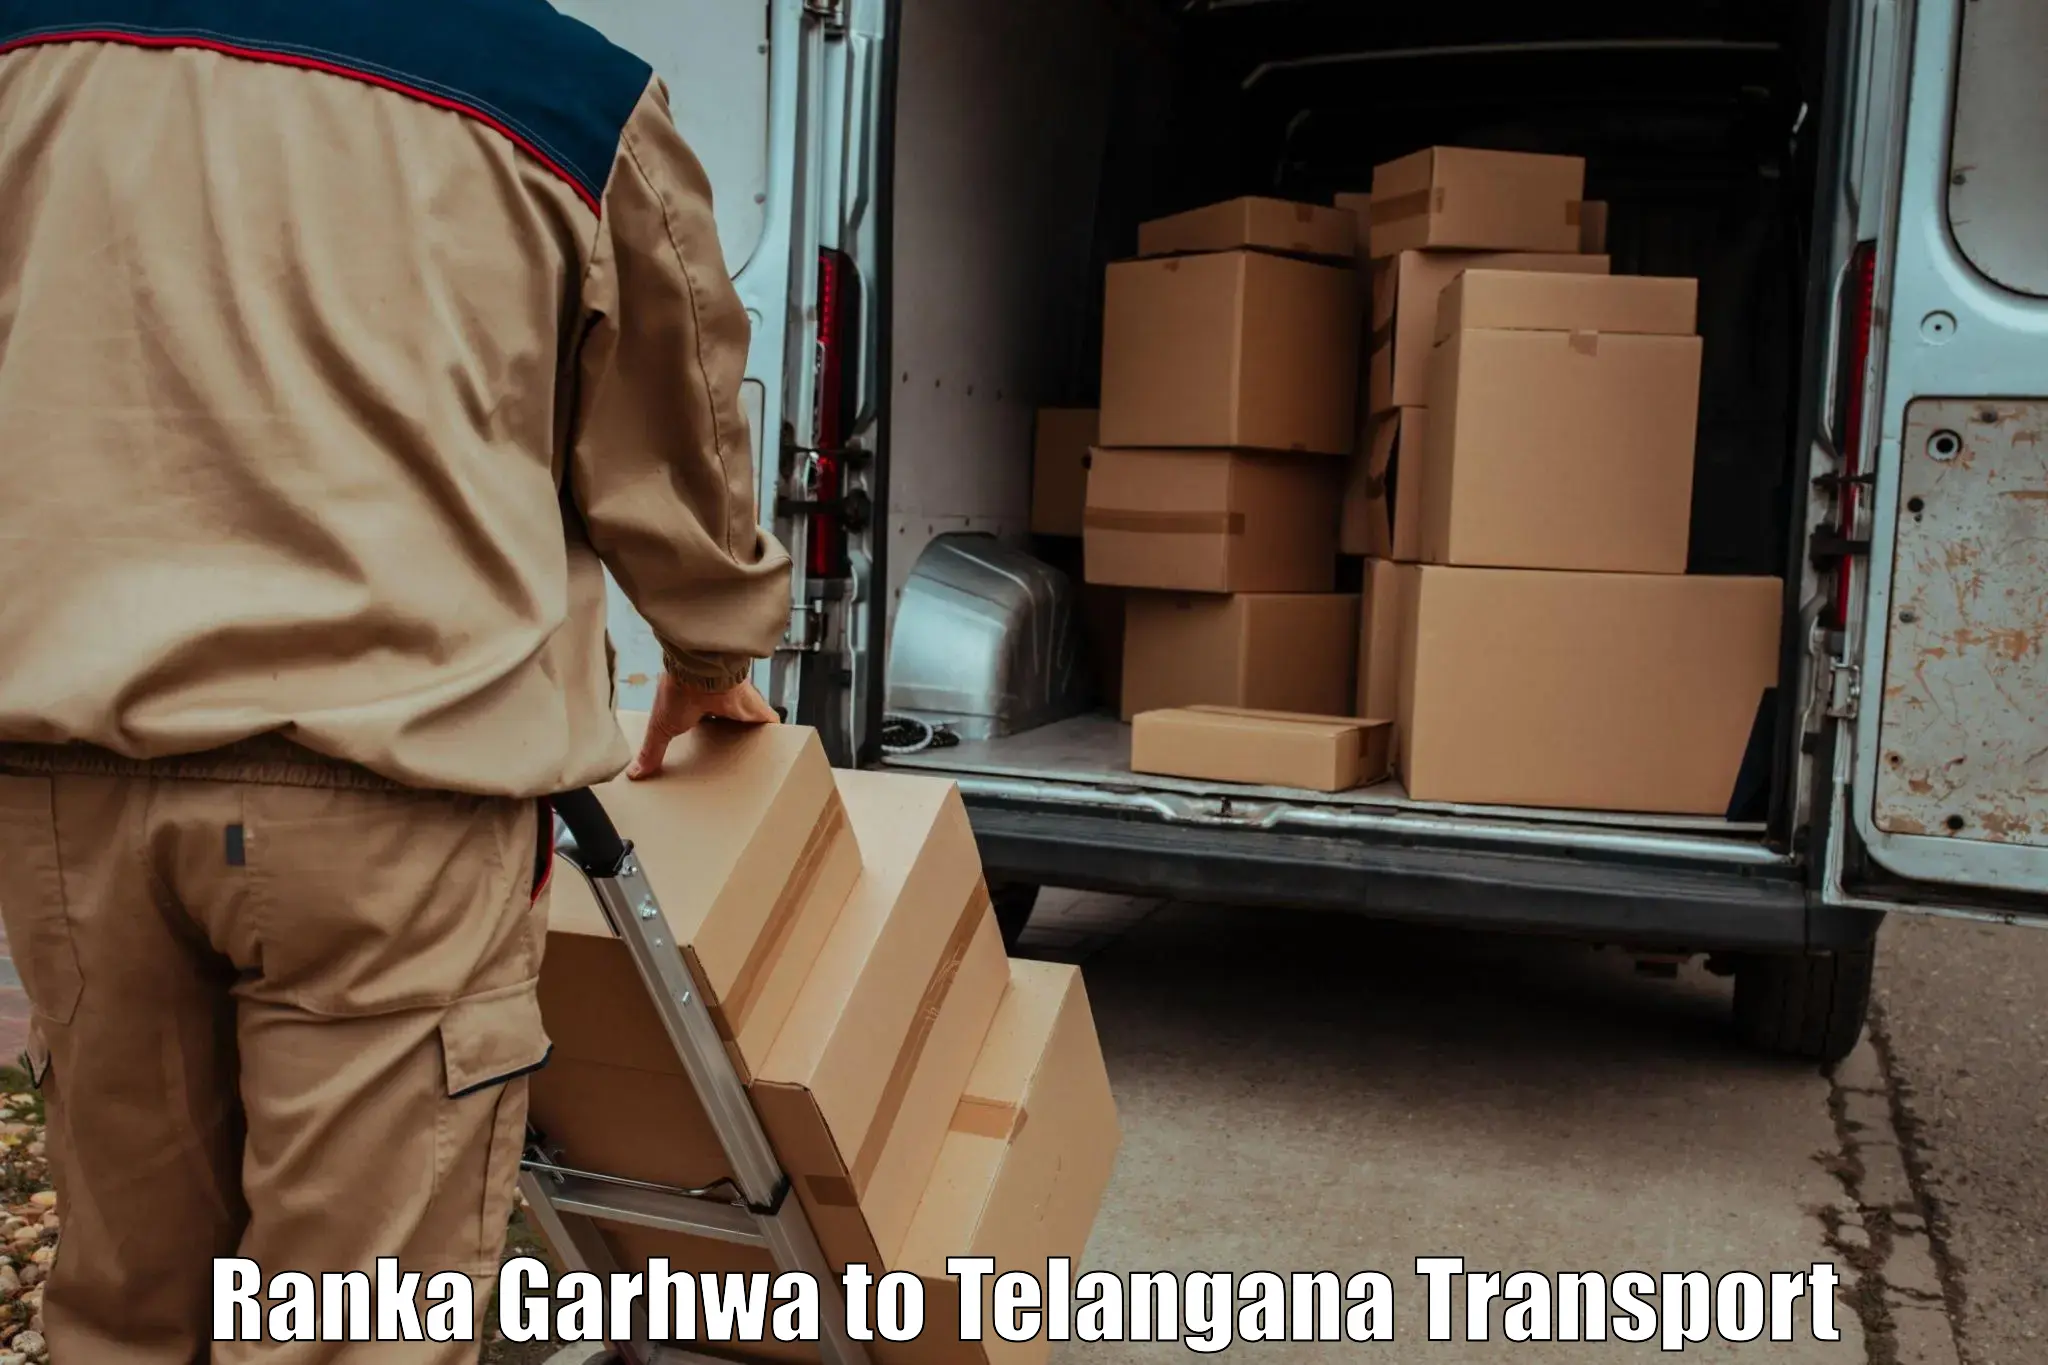 Air freight transport services Ranka Garhwa to Shadnagar